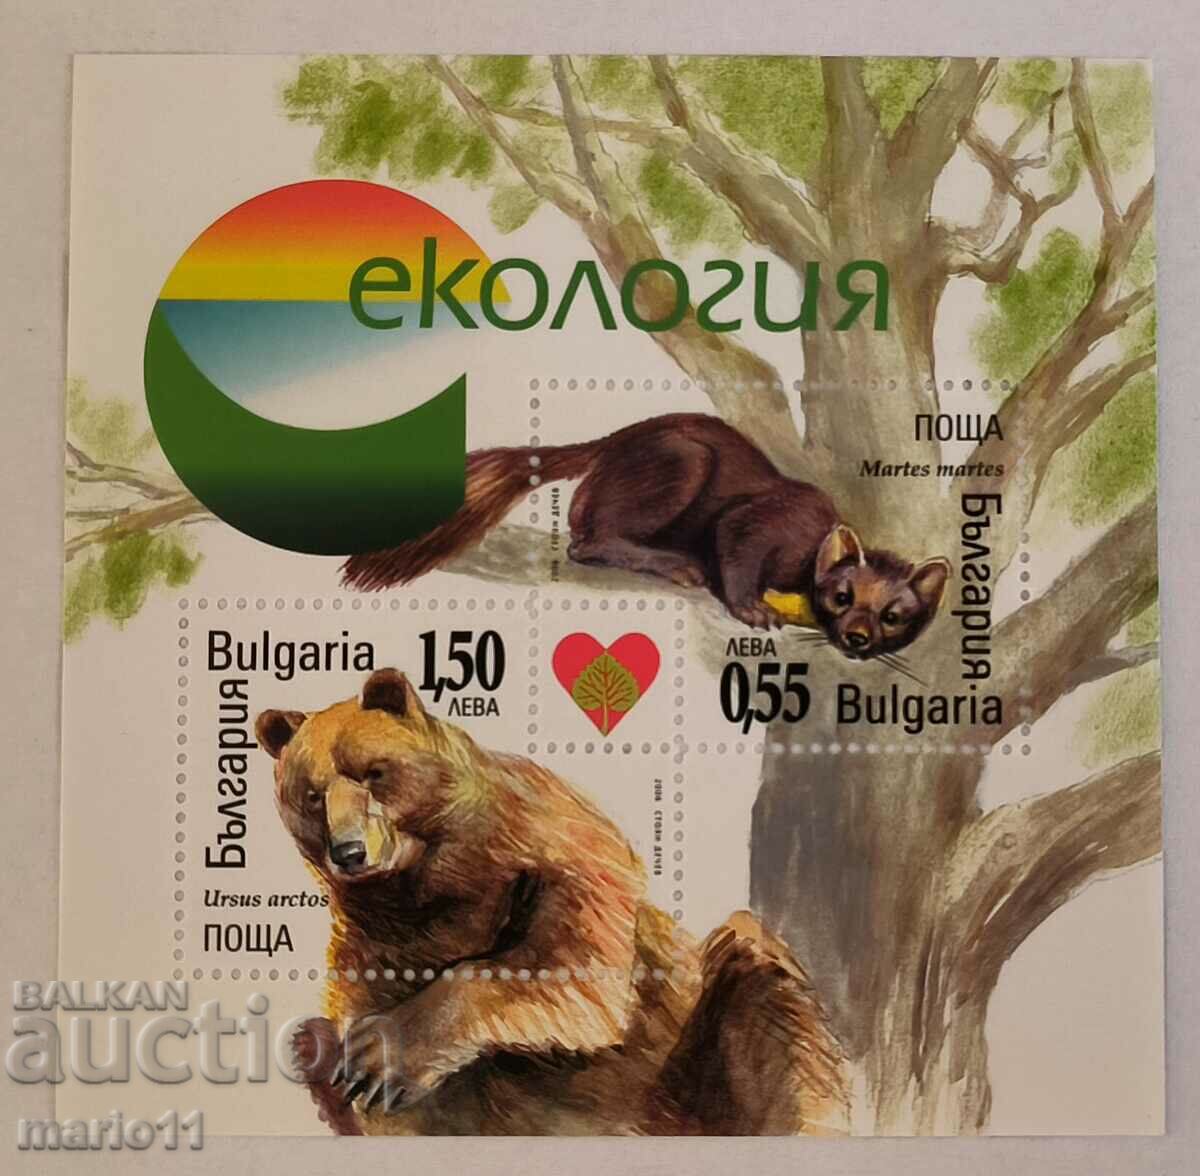 Bulgaria - 4727 - Ecologie, bloc